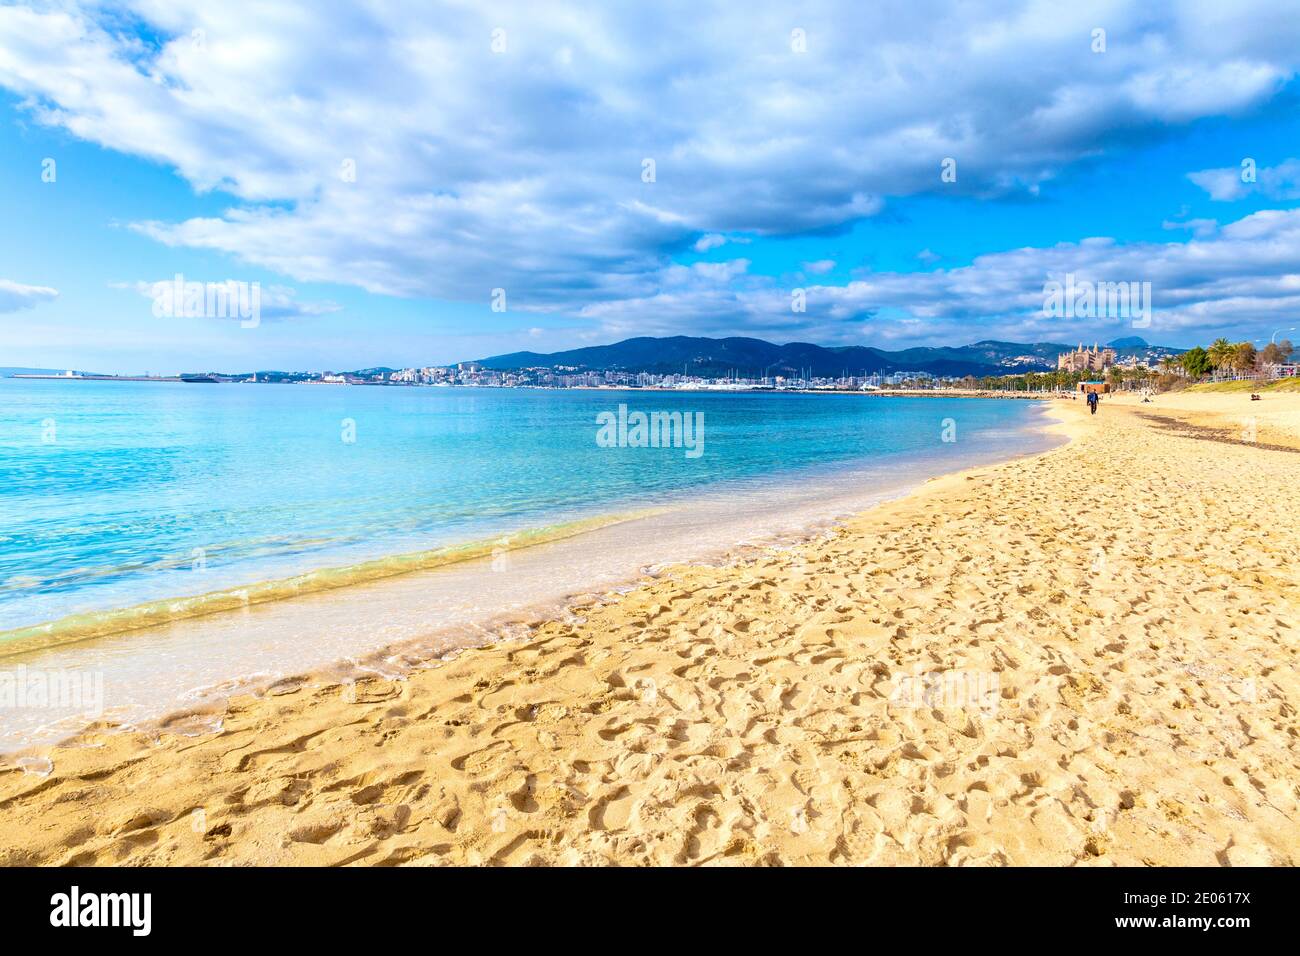 Platja de Can Pere Antoni beach and azure sea water, Mallorca, Spain Stock Photo